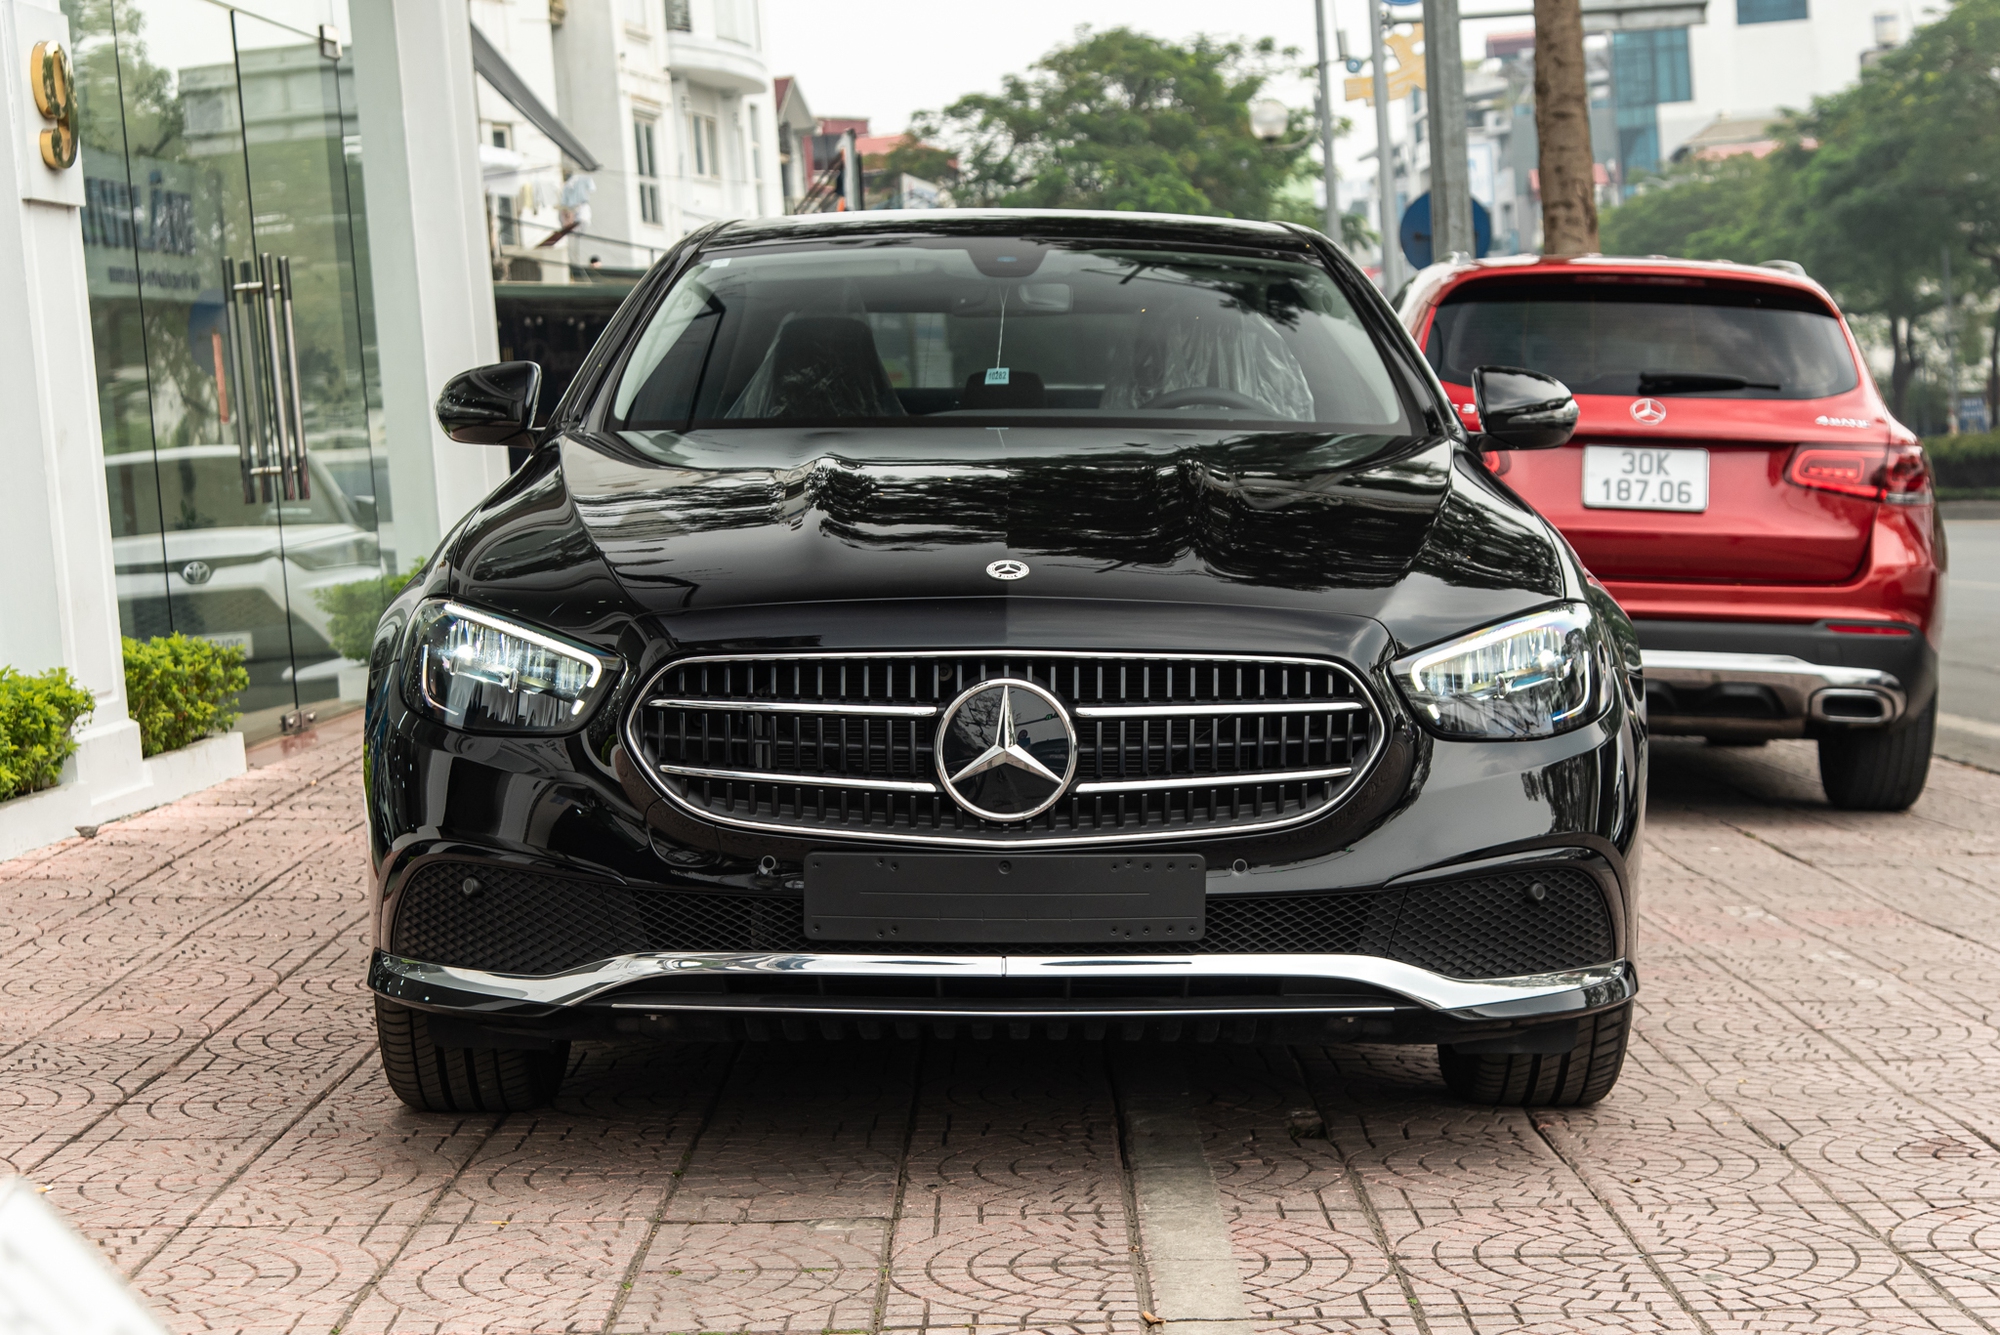 Muốn mua Mercedes-Benz E-Class mới với giá như xe cũ thì đây là một lựa chọn: Lăn bánh 30km, còn nguyên nilon và chưa ra biển nhưng rẻ hơn niêm yết 309 triệu đồng - Ảnh 3.